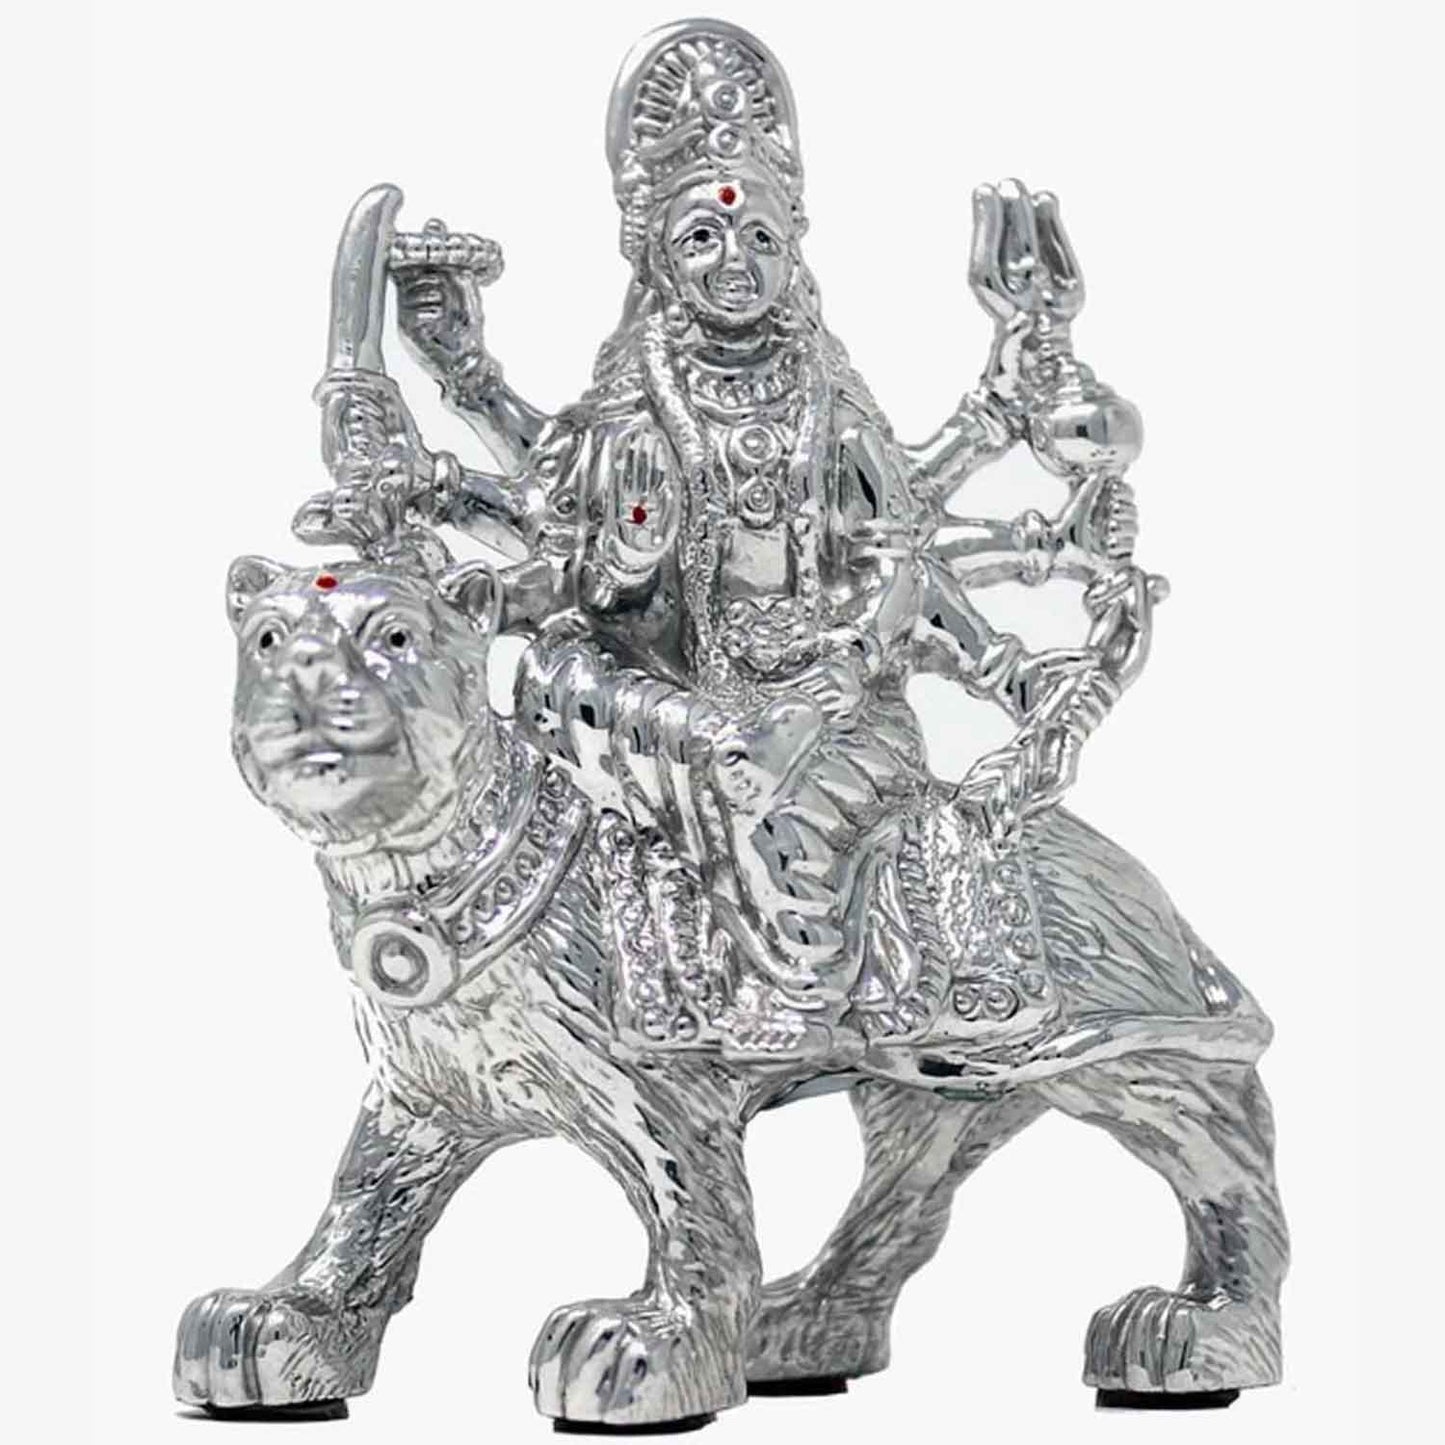 Silver durga statue